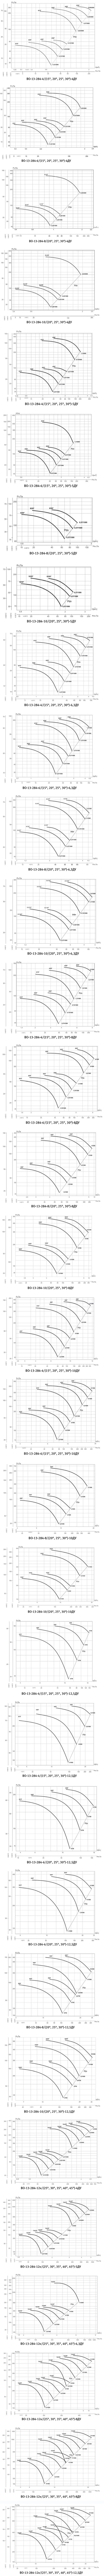 Аэродинамические характеристики вентилятора ВО 13-284 ДУ